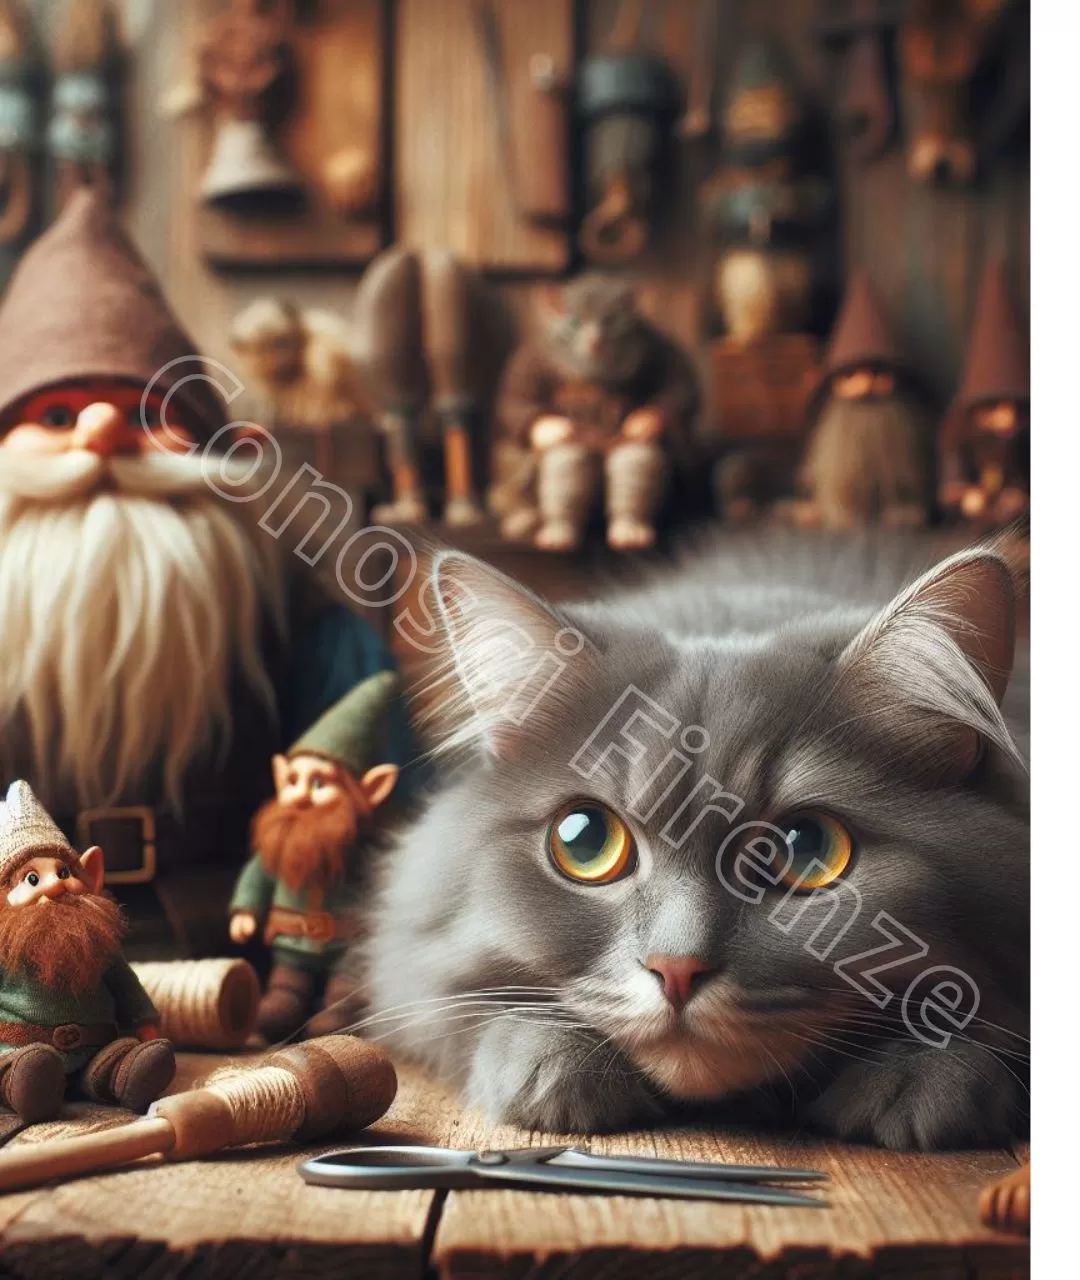 Il gatto è il compagno di giochi del nano. È un animale agile e furbo, che ha il pelo grigio e gli occhi verdi.